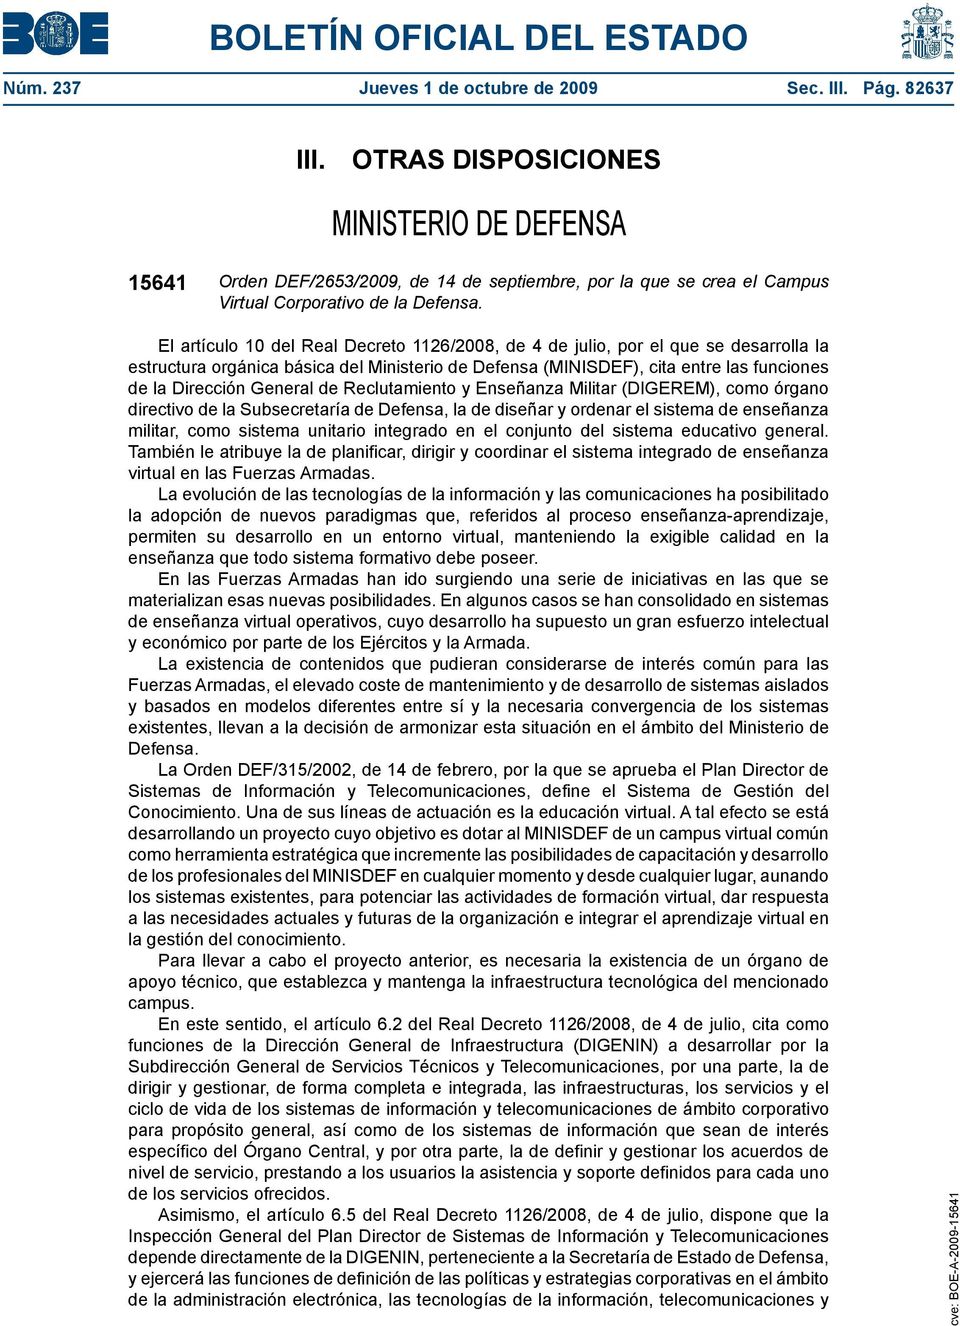 El artículo 10 del Real Decreto 1126/2008, de 4 de julio, por el que se desarrolla la estructura orgánica básica del Ministerio de Defensa (MINISDEF), cita entre las funciones de la Dirección General